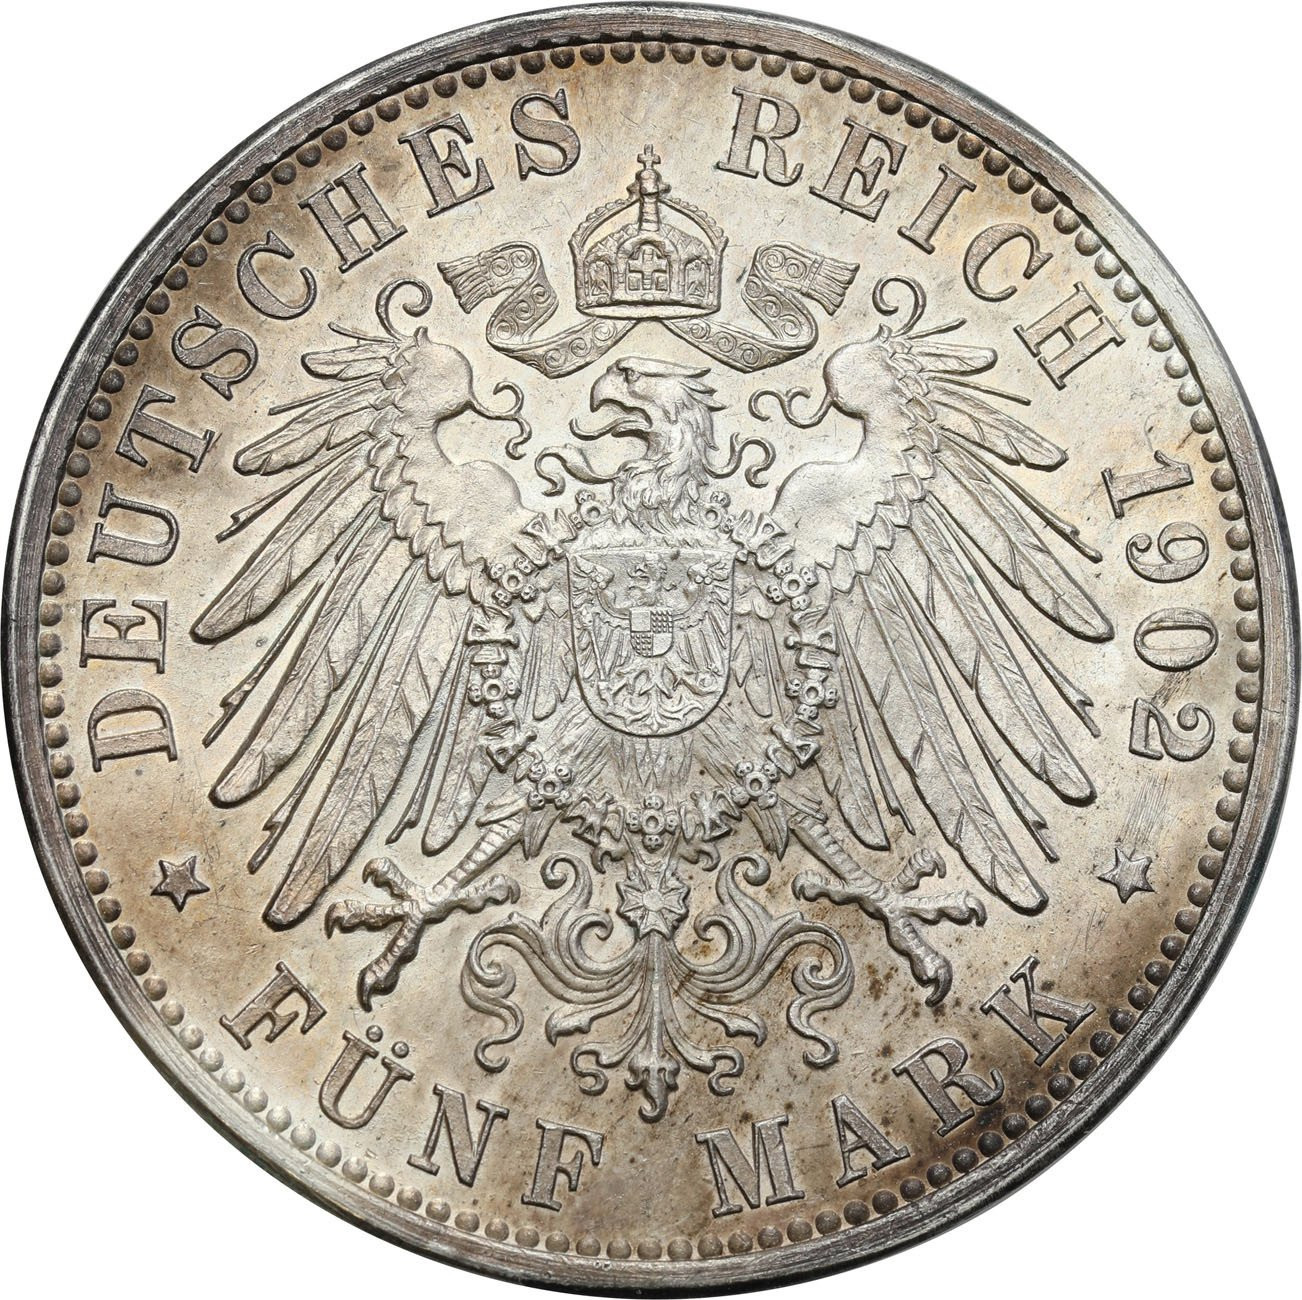 Niemcy, Badenia. 5 marek 1902 G, Karlsruhe 